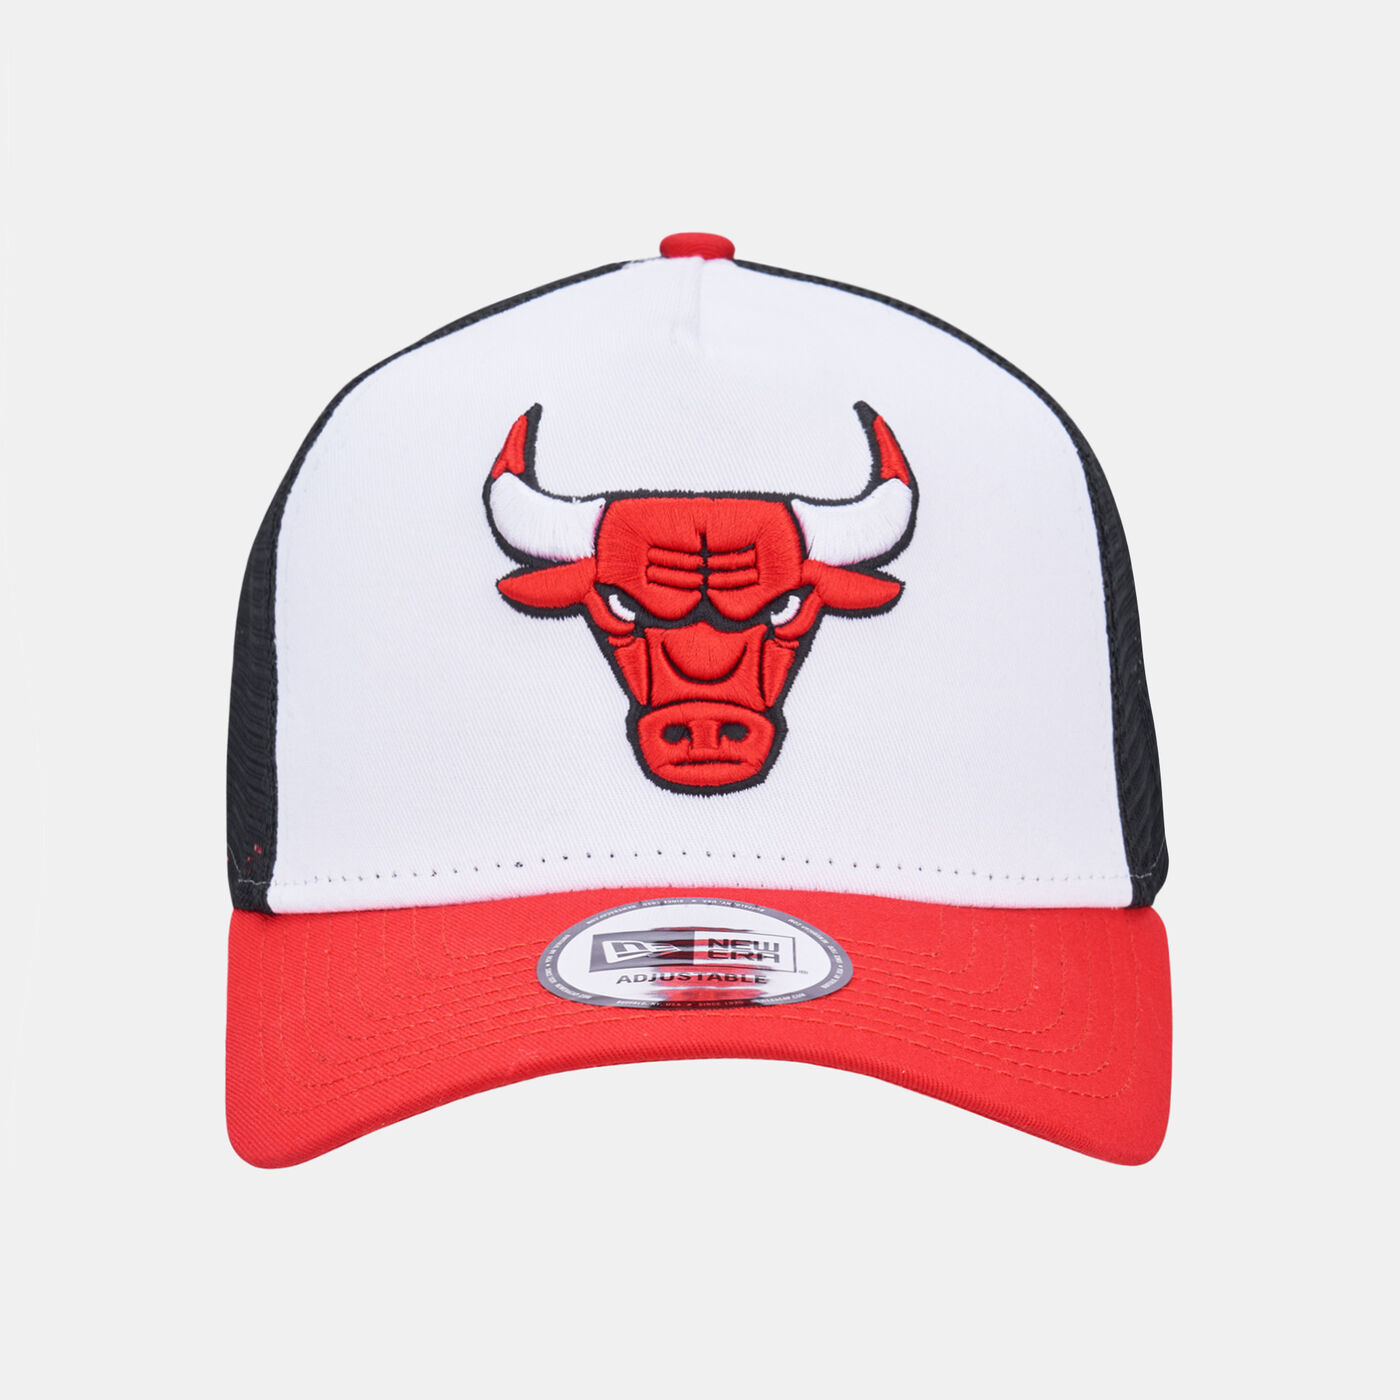 Men's NBA Chicago Bulls Trucker Cap